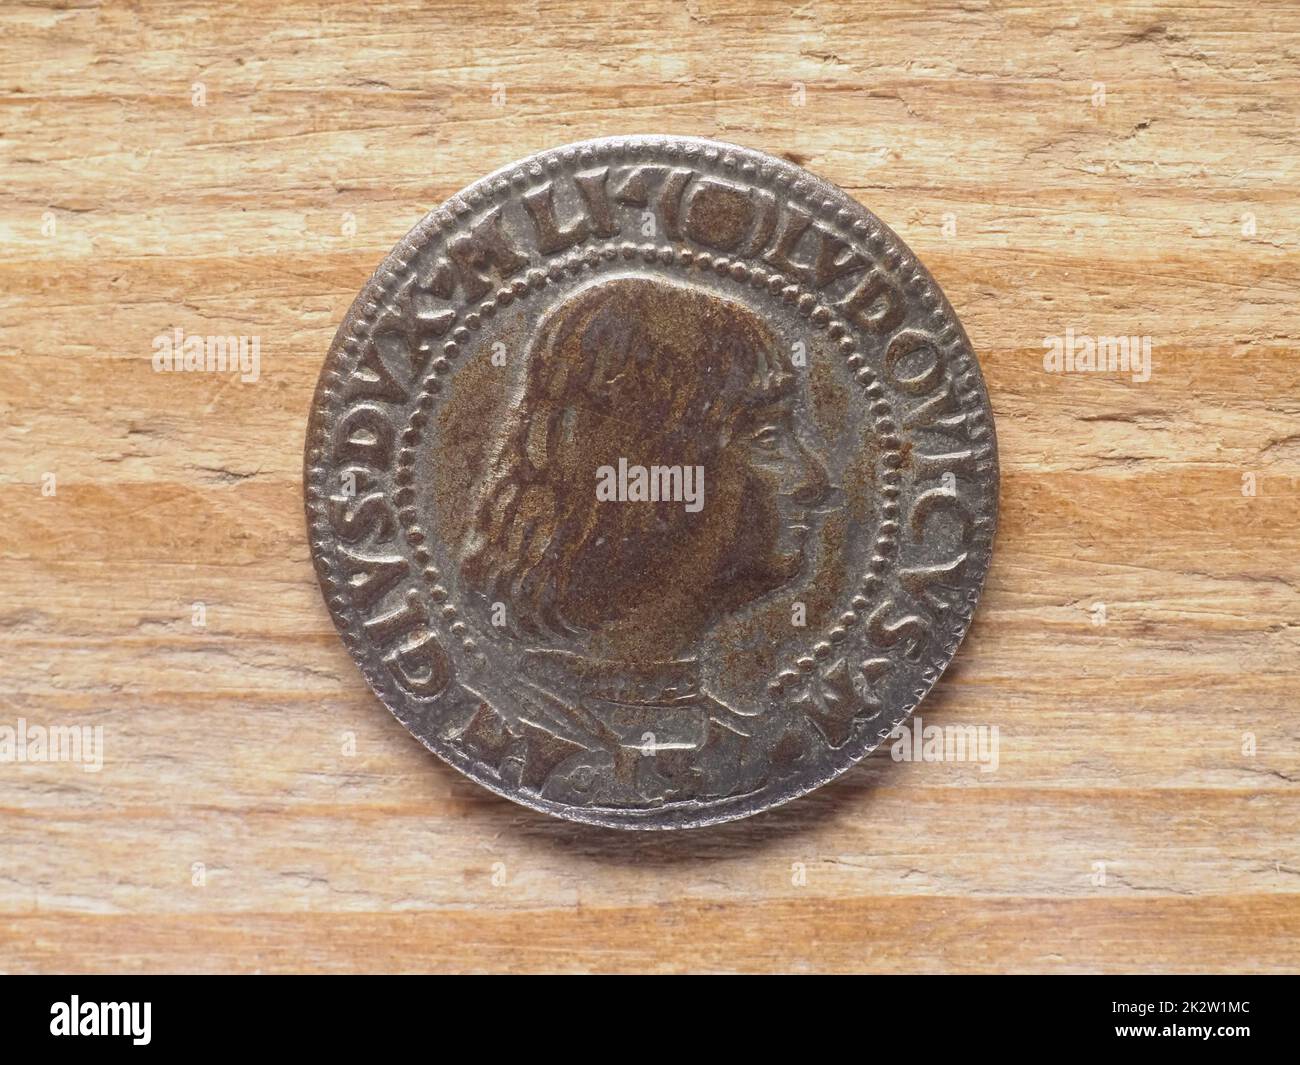 Ancient Milanese testone coin obverse showing Gian Galeazzo Maria Sforza Stock Photo